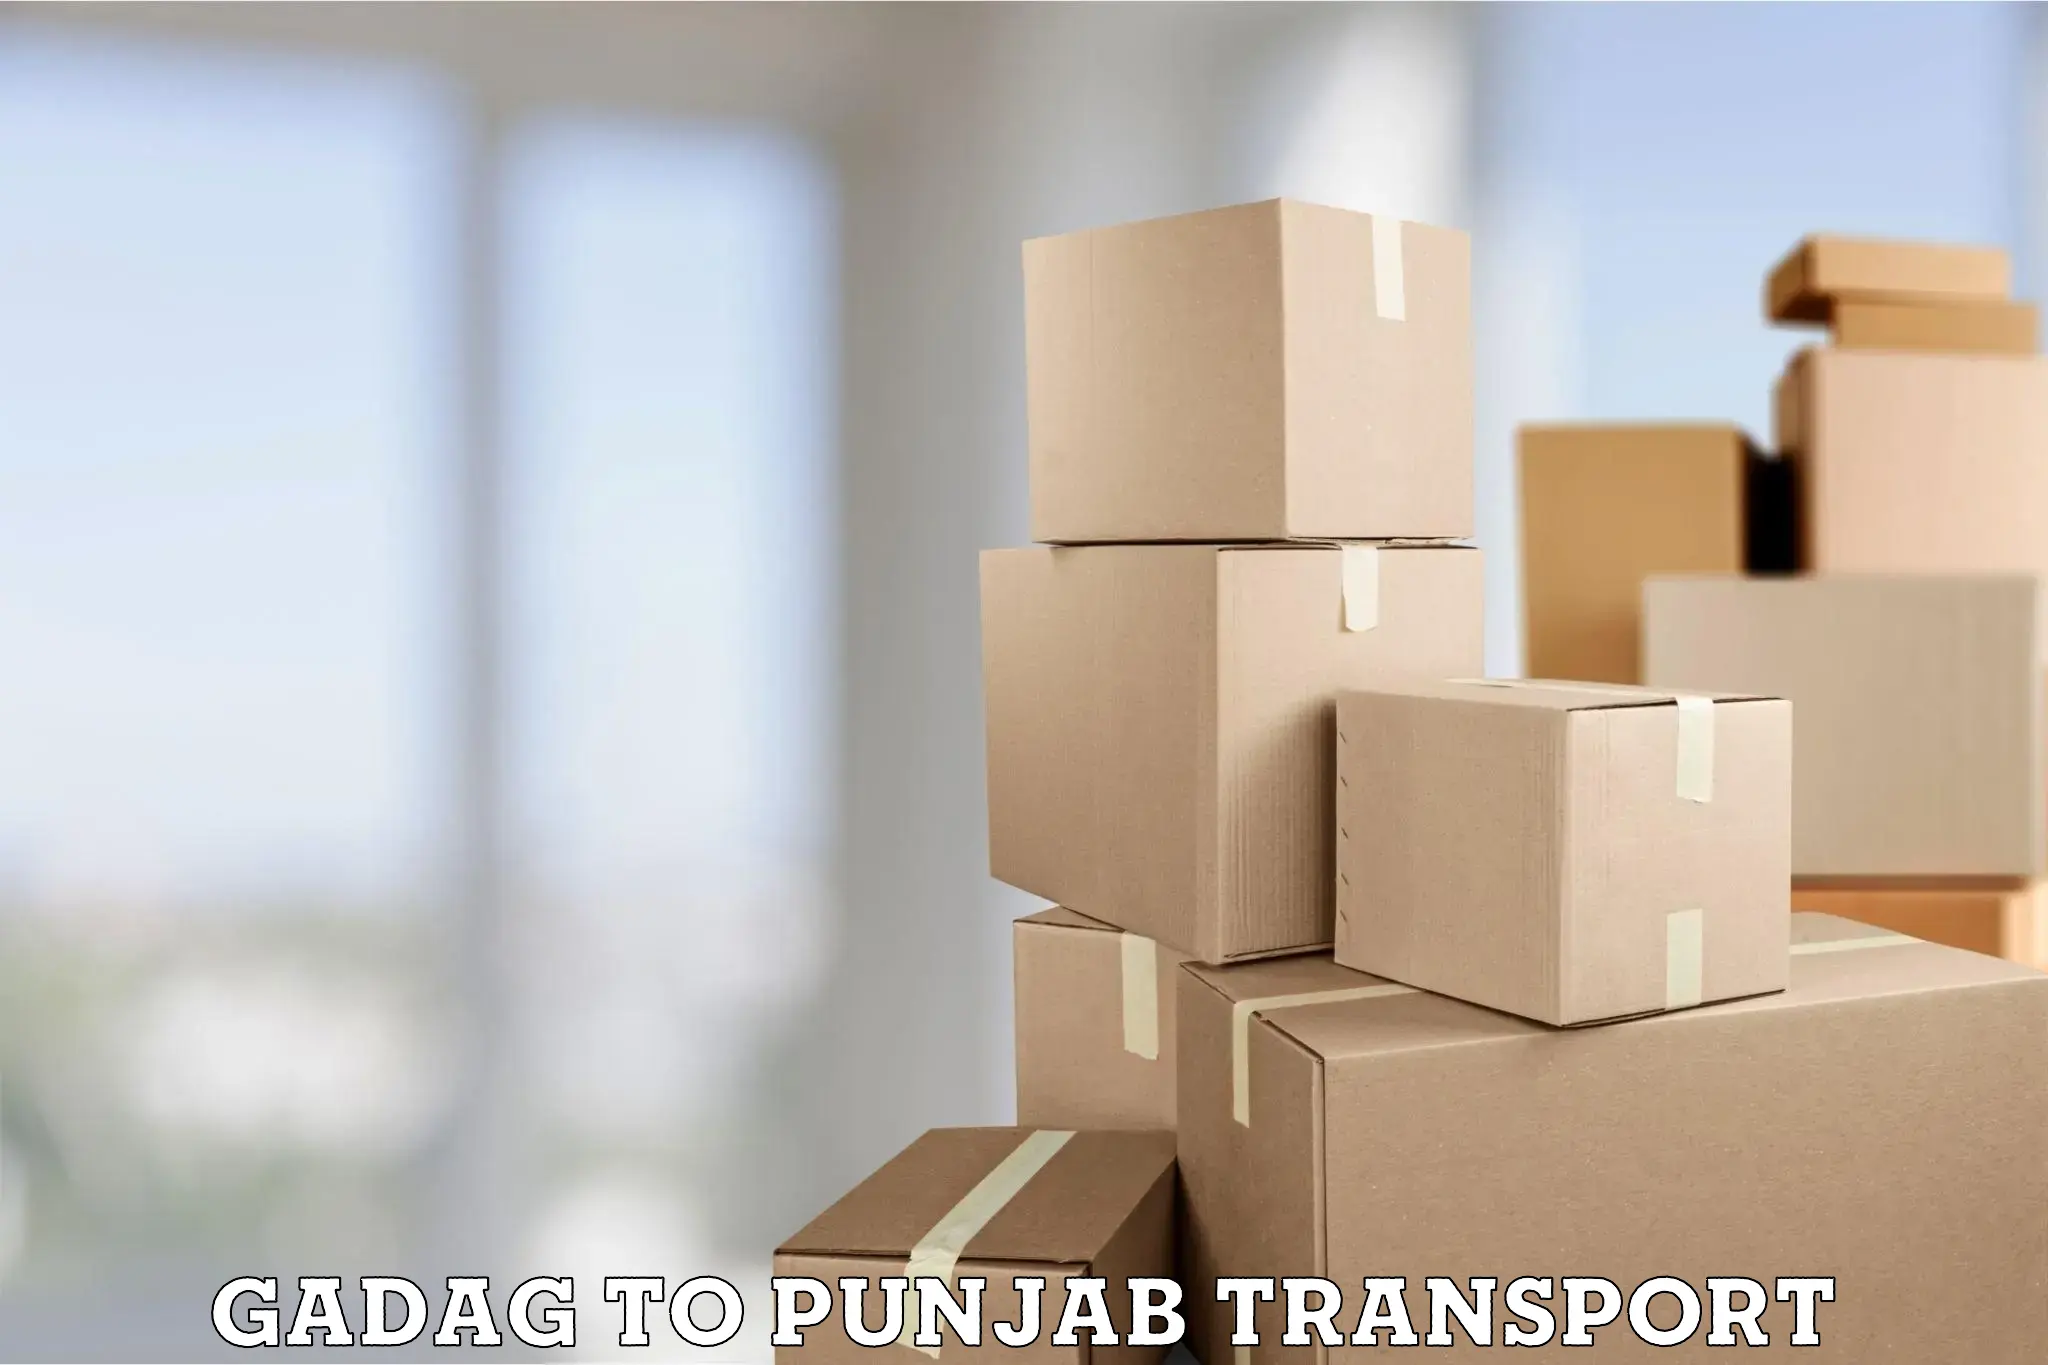 Furniture transport service Gadag to Malerkotla